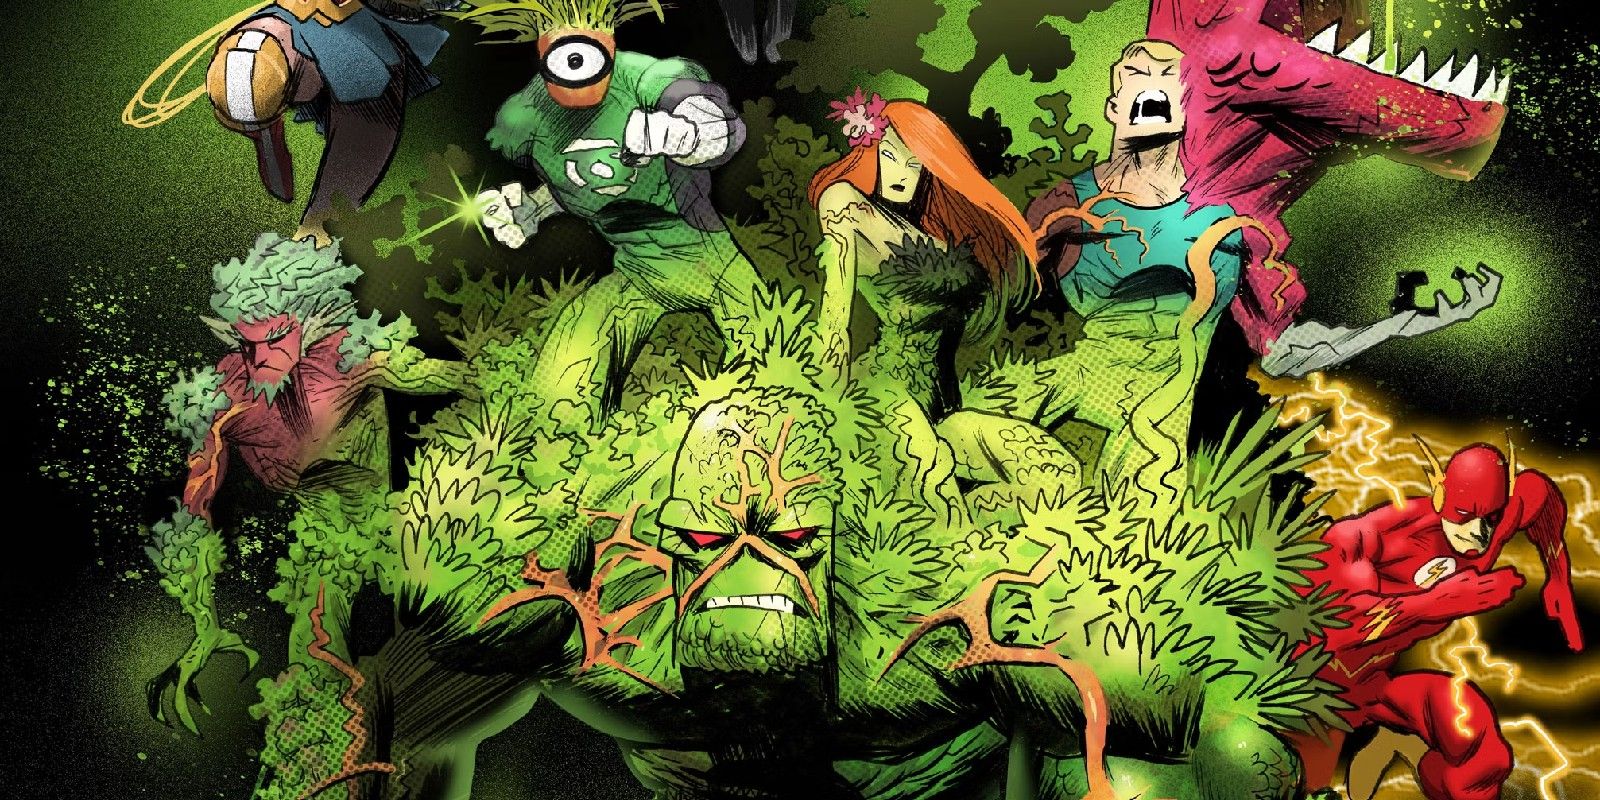 Couverture DC Legion of Bloom avec Swamp Thing Poison Ivy et plus